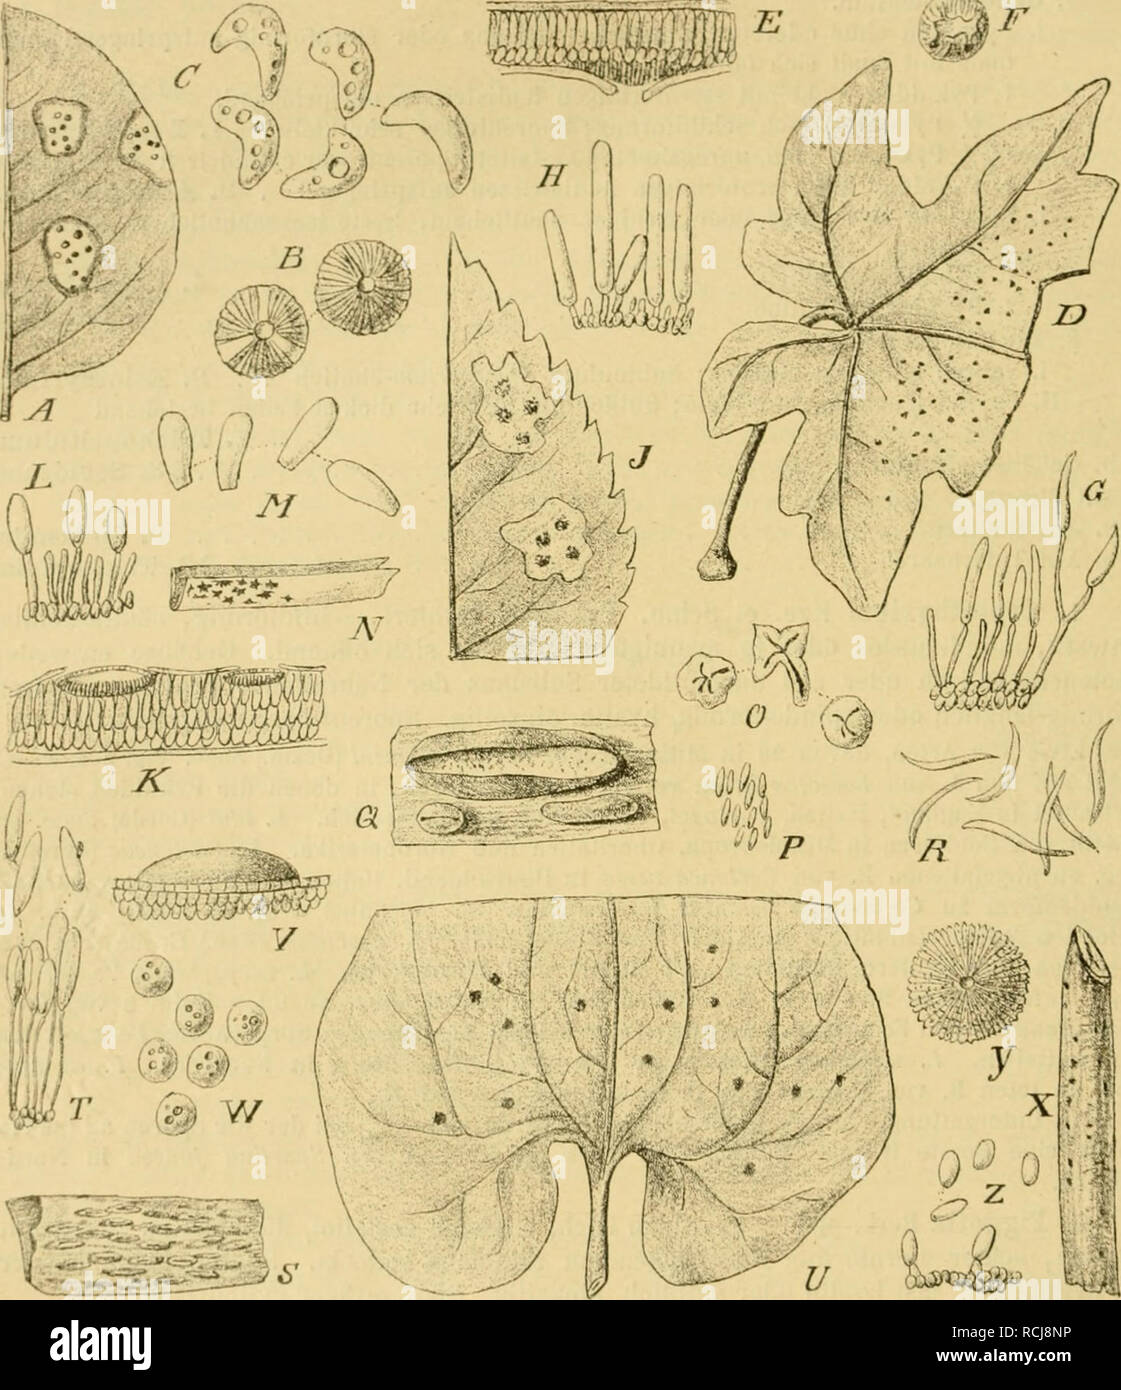 . Die Natürlichen Pflanzenfamilien nebst ihren Gattungen und wichtigeren Arten, insbesondere den Nutzpflanzen, unter Mitwirkung zahlreicher hervorragender Fachgelehrten begründet. Botany. 38g Spliaeropsidales. (Lindau.) Über 60, zum Teil iiocli selir zweifelliafle Arten, von denen ein Drittel in Milteleuroiia sich findet. L. virguUorum Sacc. auf toten Ausläufern von lUibiis fruticosus in Frankreich; gehört nach Sacc. zu Hypodenna rirr/iiHonim. L. Pini Desm. an Nadeln von Pinus-Xrien in. Fig. 'lO'L A—C Leplothyrium Periclymcni (Desm.) Sacc. A Ilabitns des Pilzes, nat. Gr. B l'ykniden von oben g Stock Photo